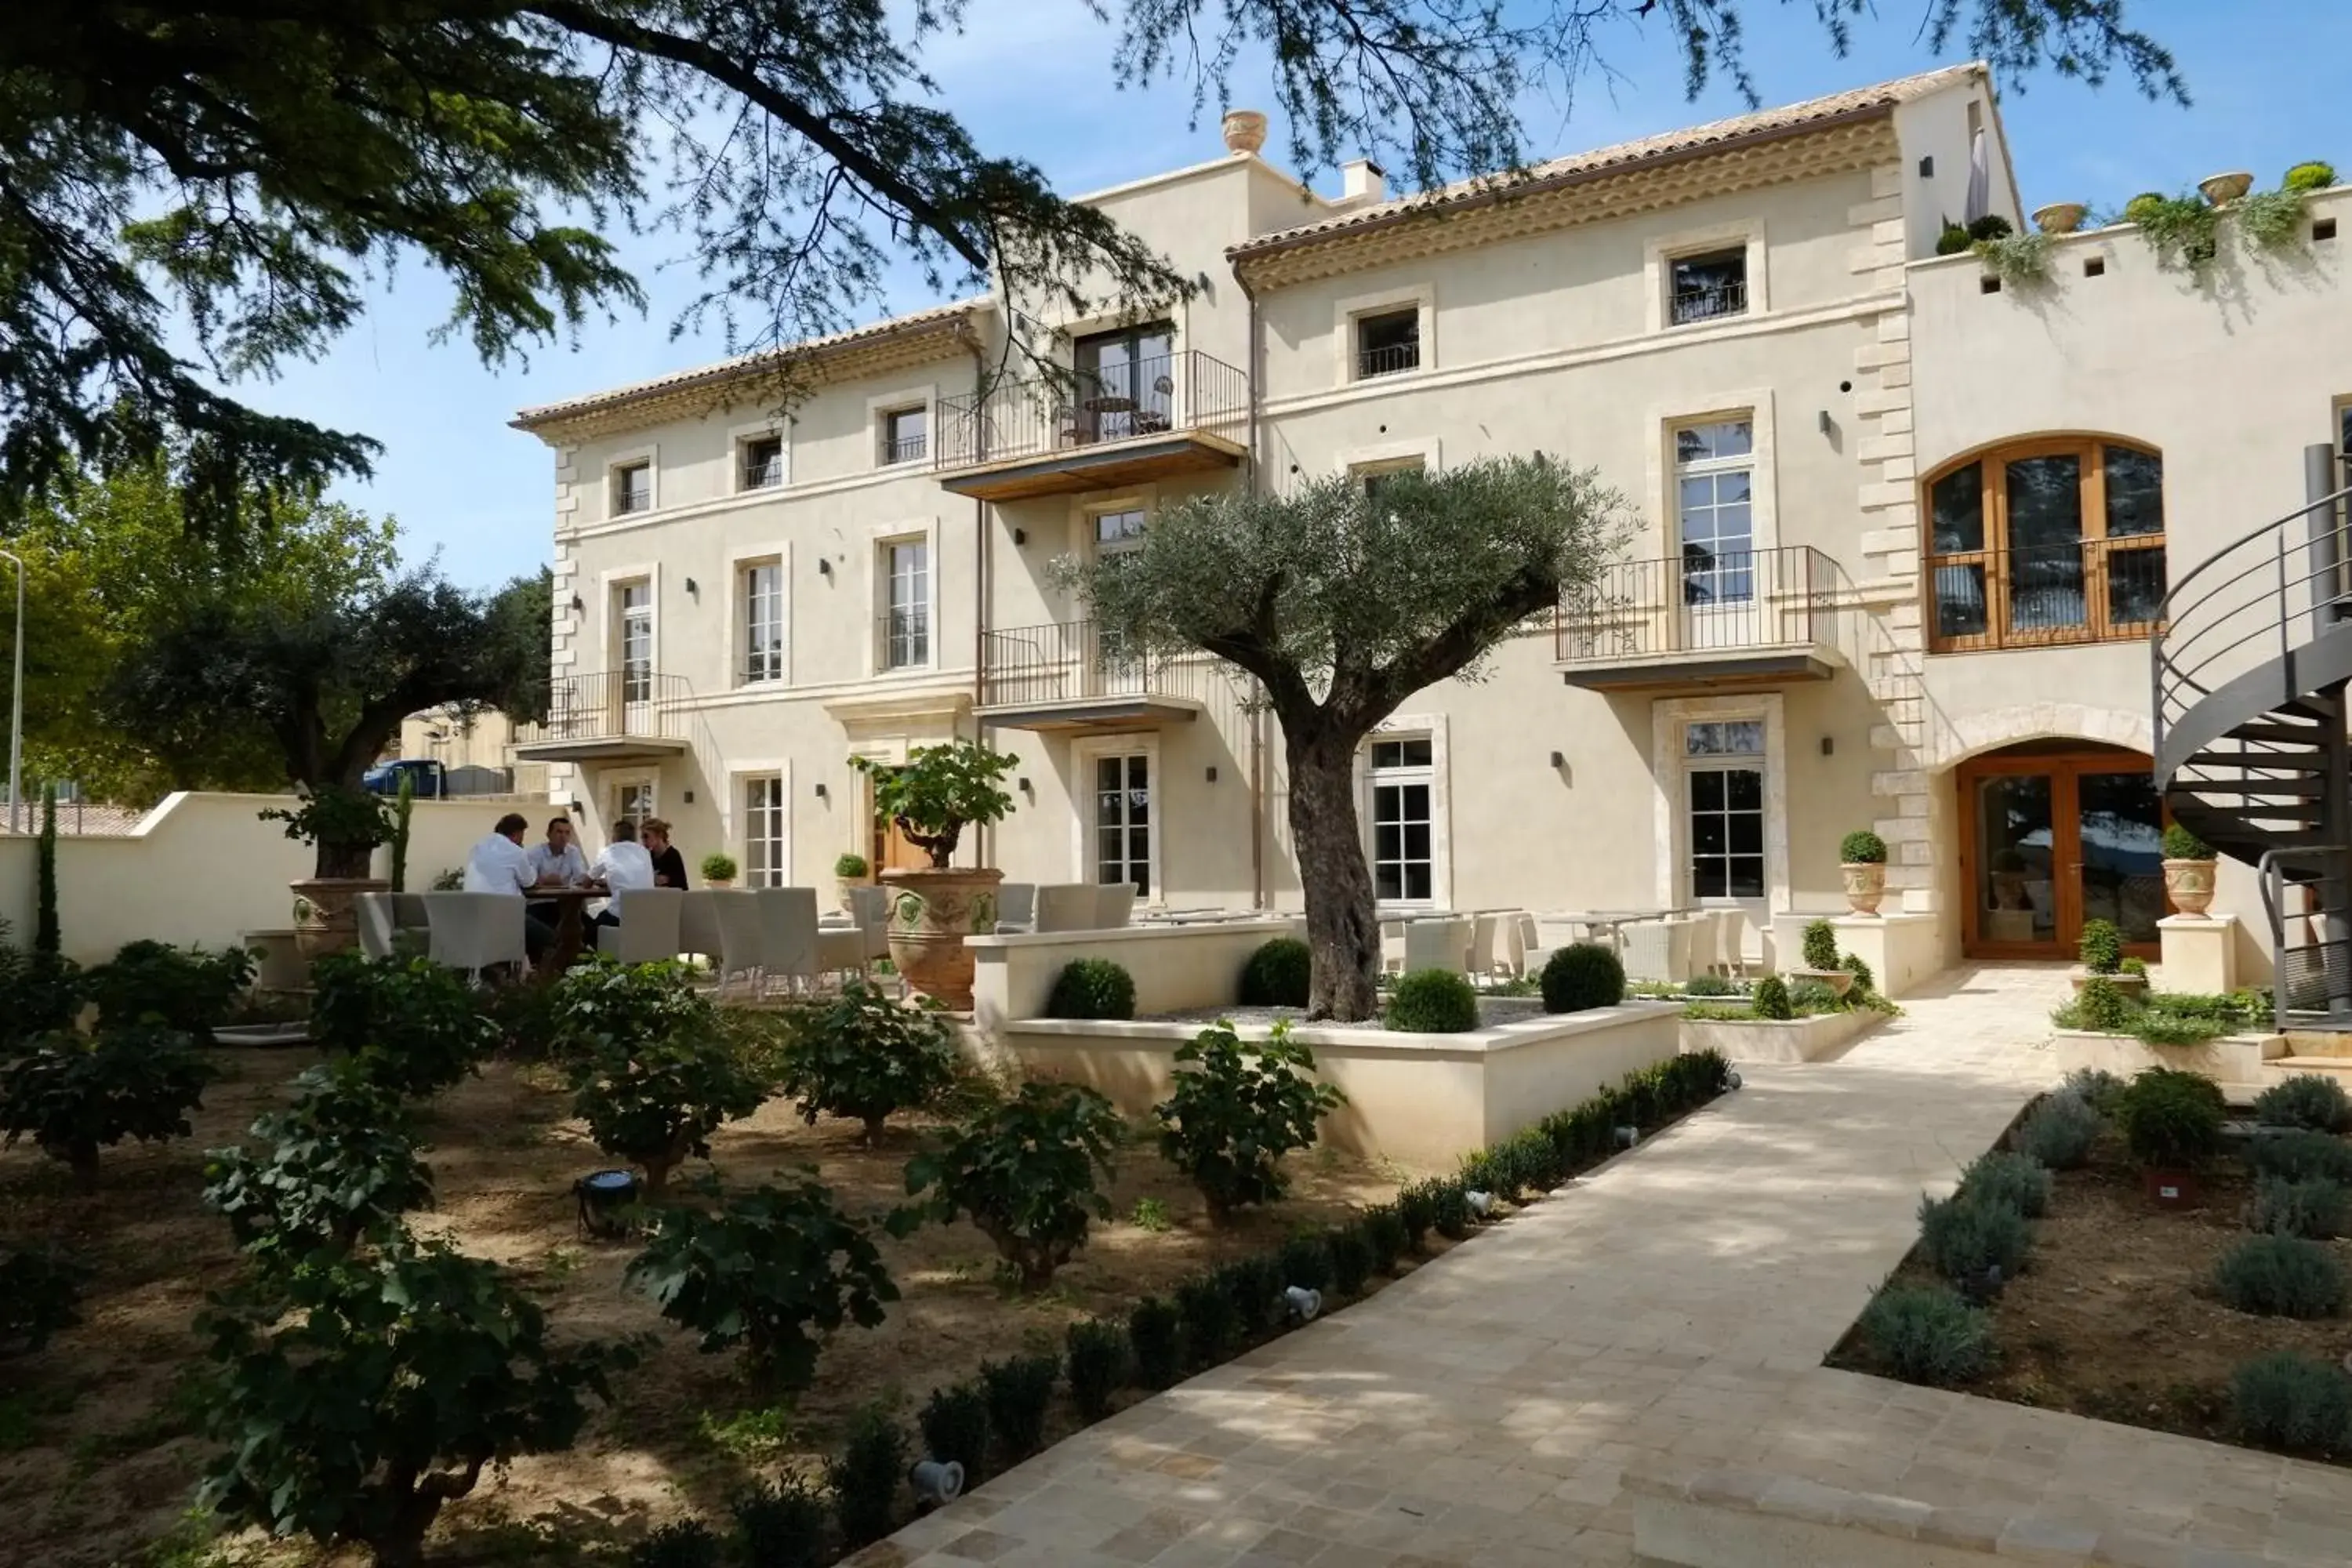 Property building, Garden in Villa Montesquieu